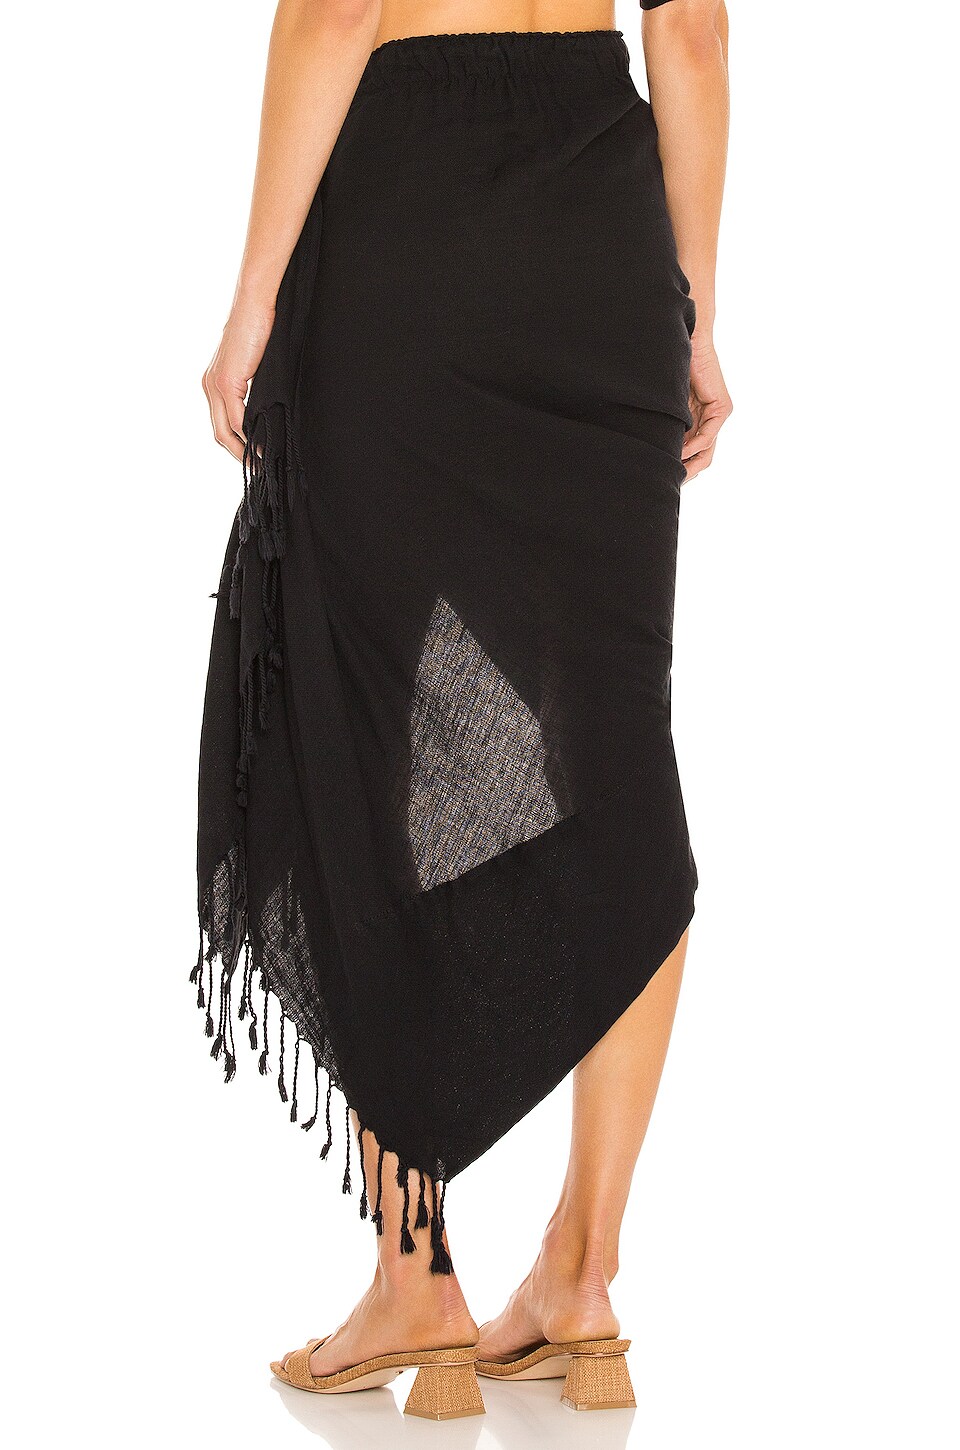 Just BEE Queen Tulum Skirt in Black | REVOLVE